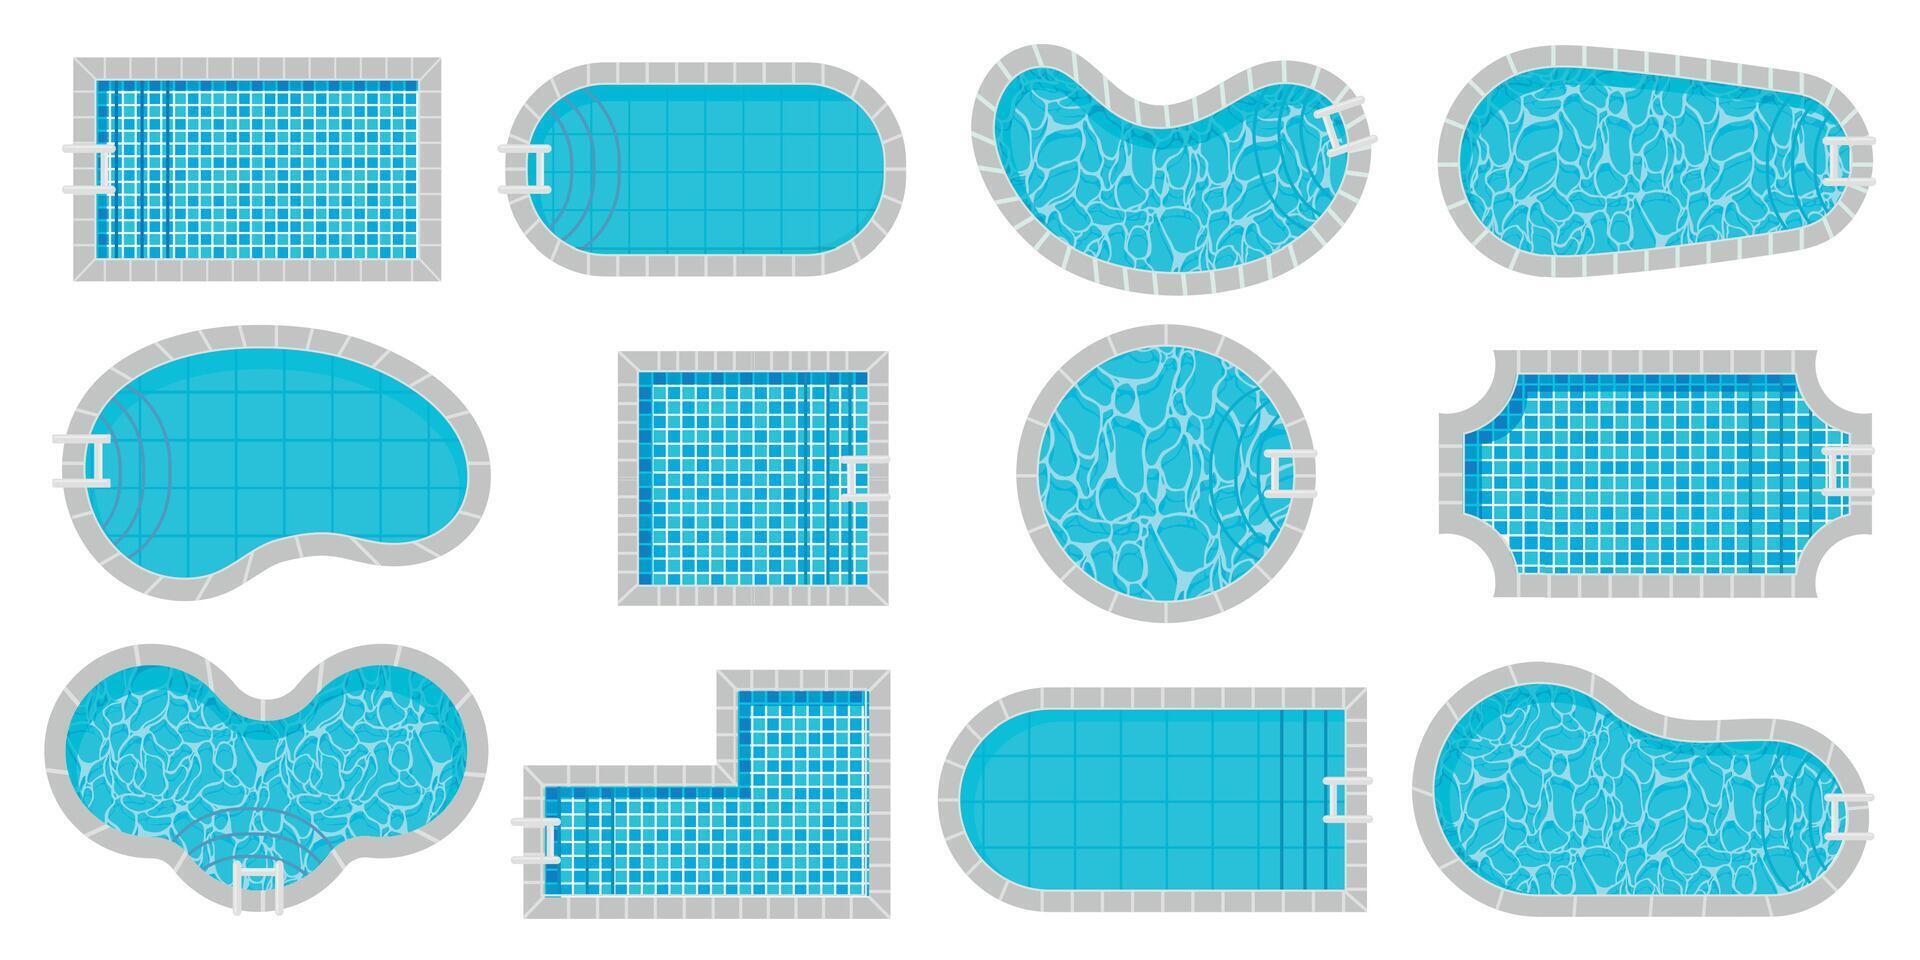 Schwimmbad oben Sicht. Schwimmen Pools anders Formen Karikatur Stil, Luxus Außen am Pool mit Wasser Textur Fliese, Sommer- Ferien schwimmen Bereich. Vektor isoliert einstellen